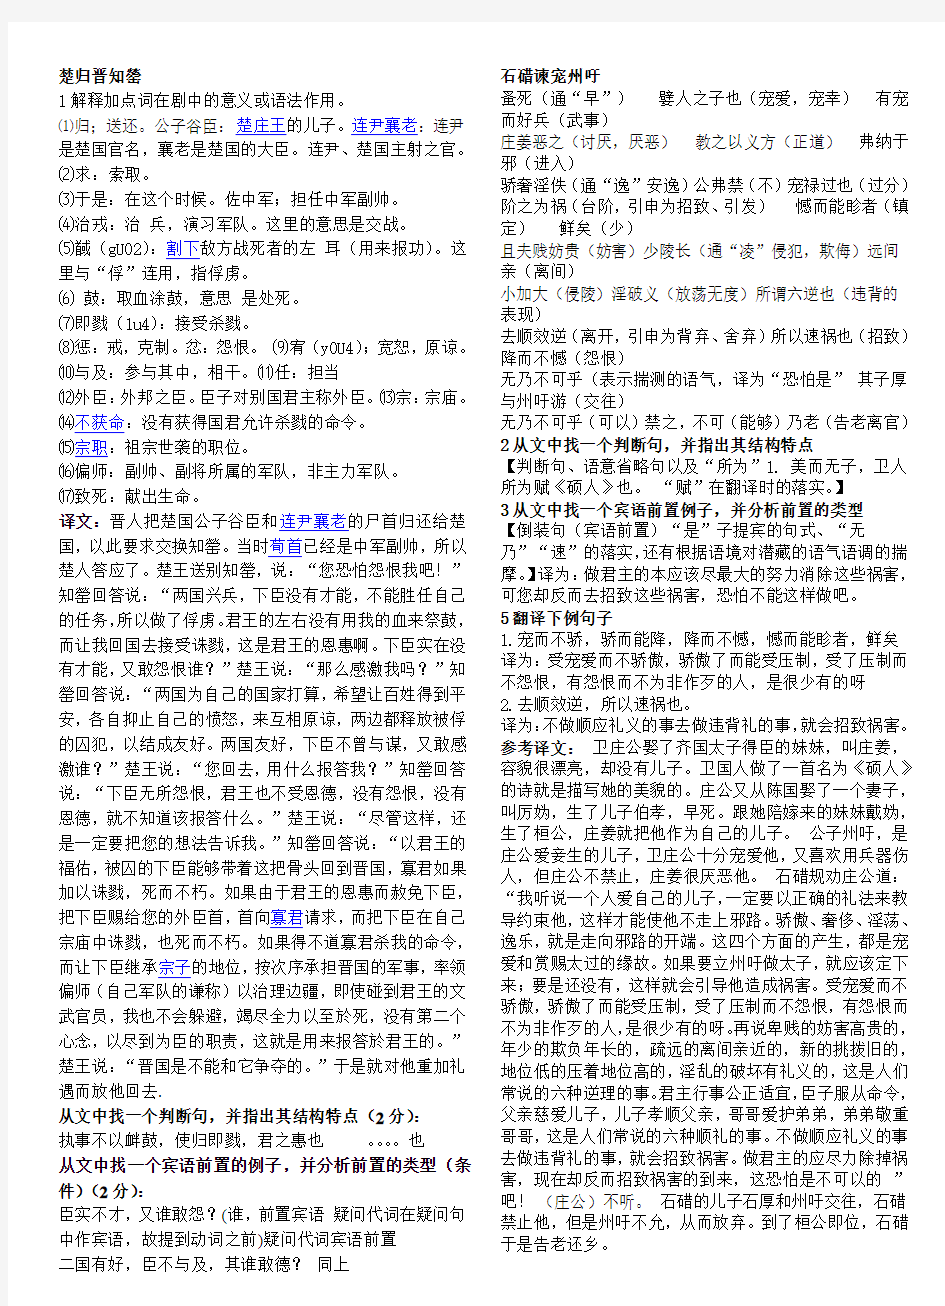 古代汉语下考试翻译